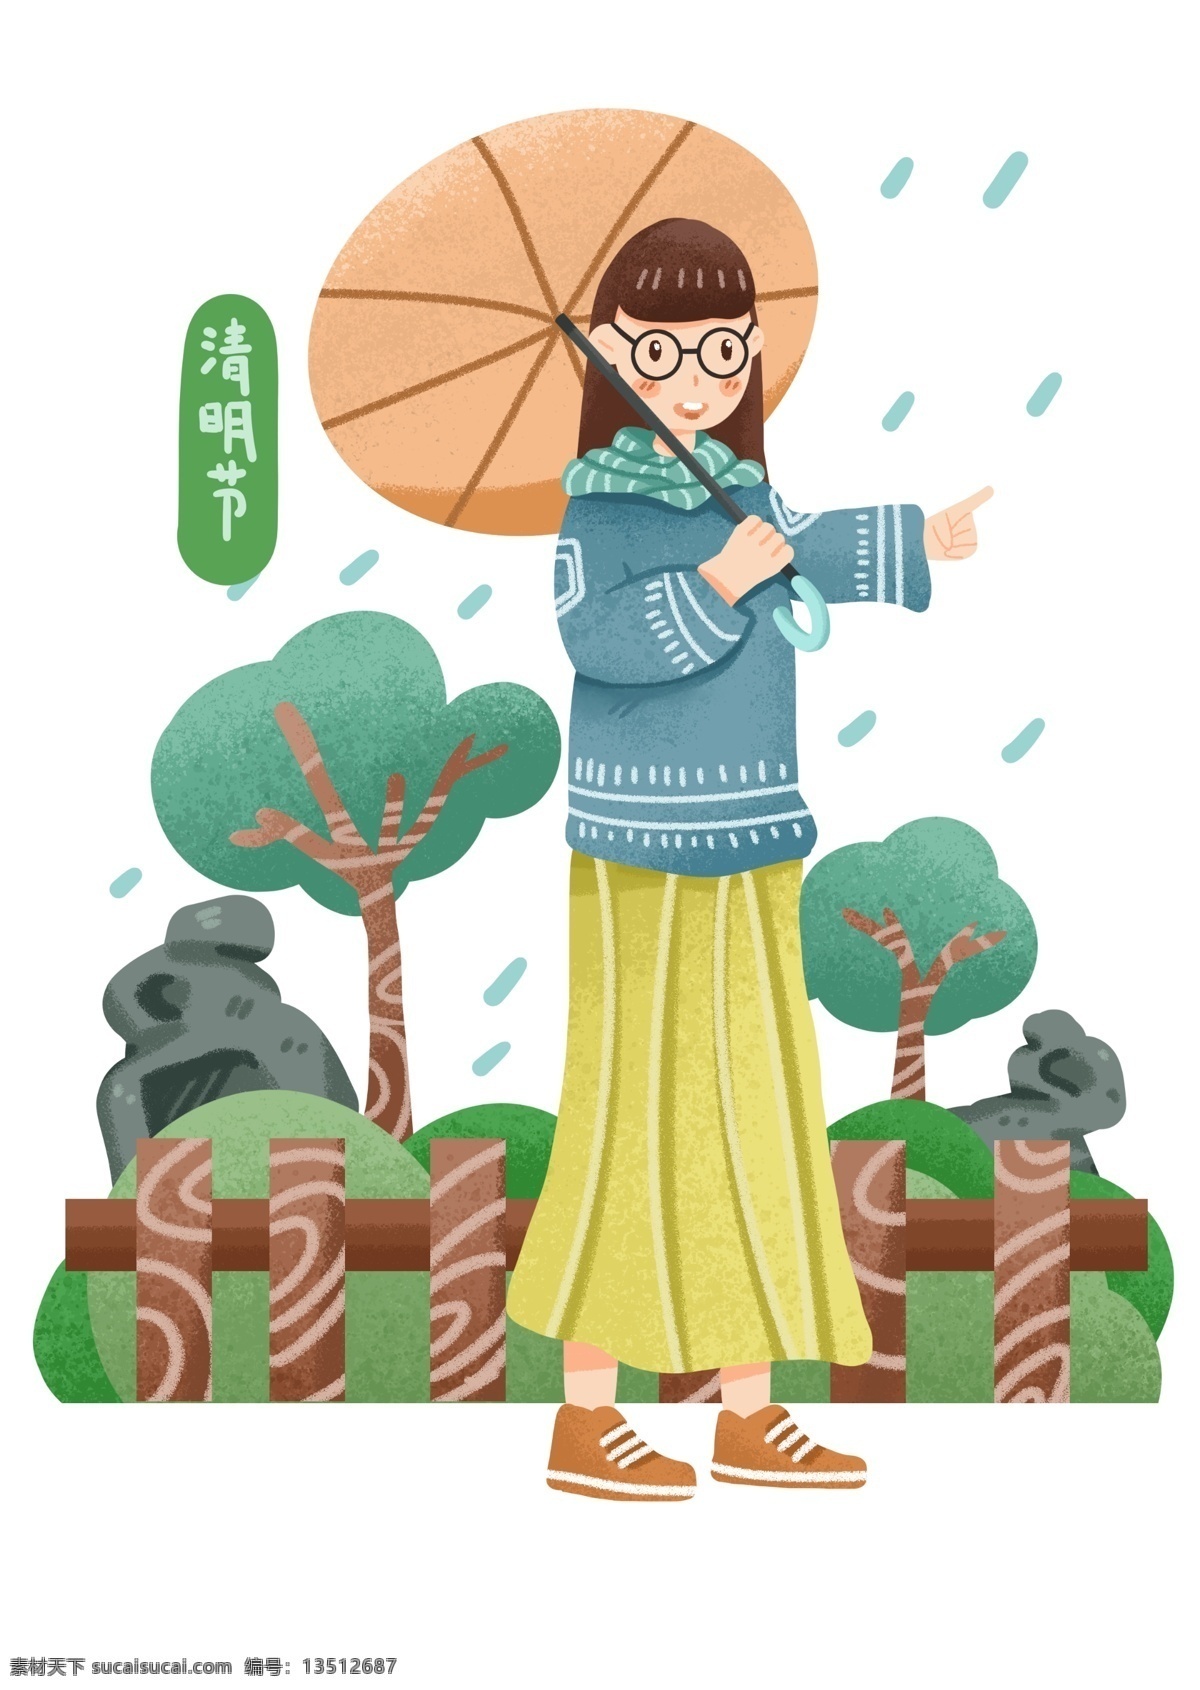 清明节 下雨 插画 下雨的天气 卡通插画 清明节插画 清明 节日 节气 二十四节气 打伞的女孩